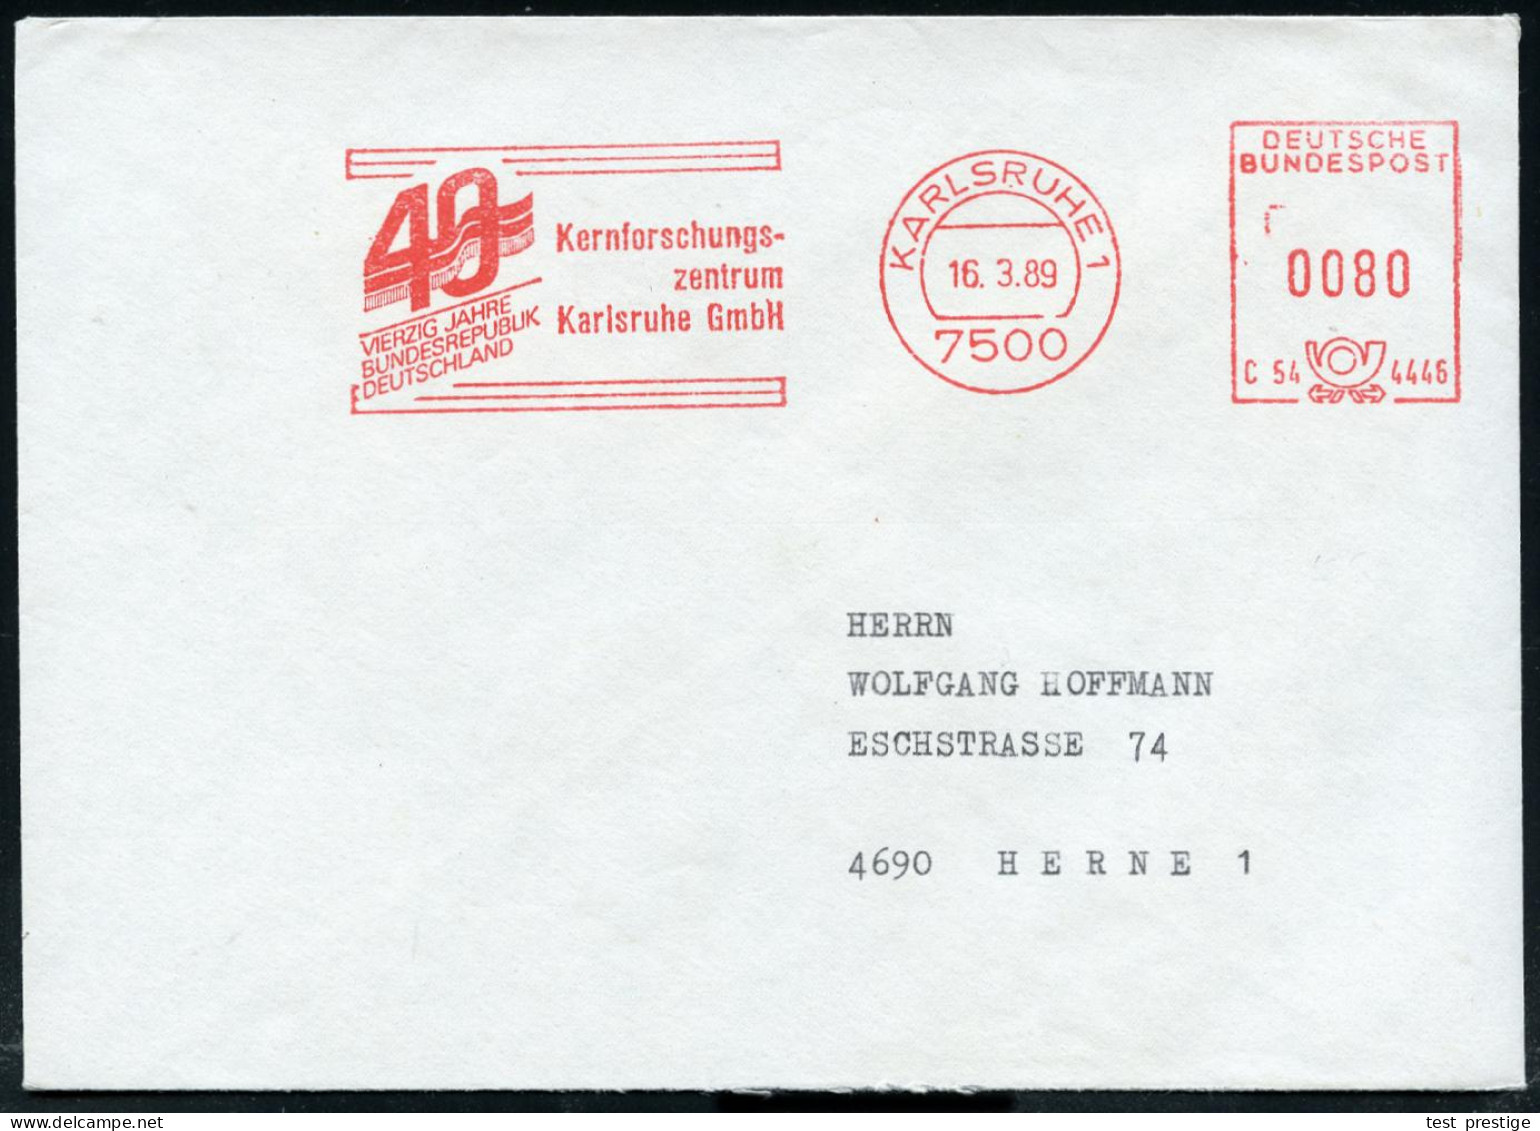 7500 KARLSRUHE 1/ C54 4446/ VIERZIG JAHRE/ BRD/ Kernforschungs-/ Zentrum.. 1989 (16,3,) Seltener Jubil.-AFS (Flagge) Kla - Atome